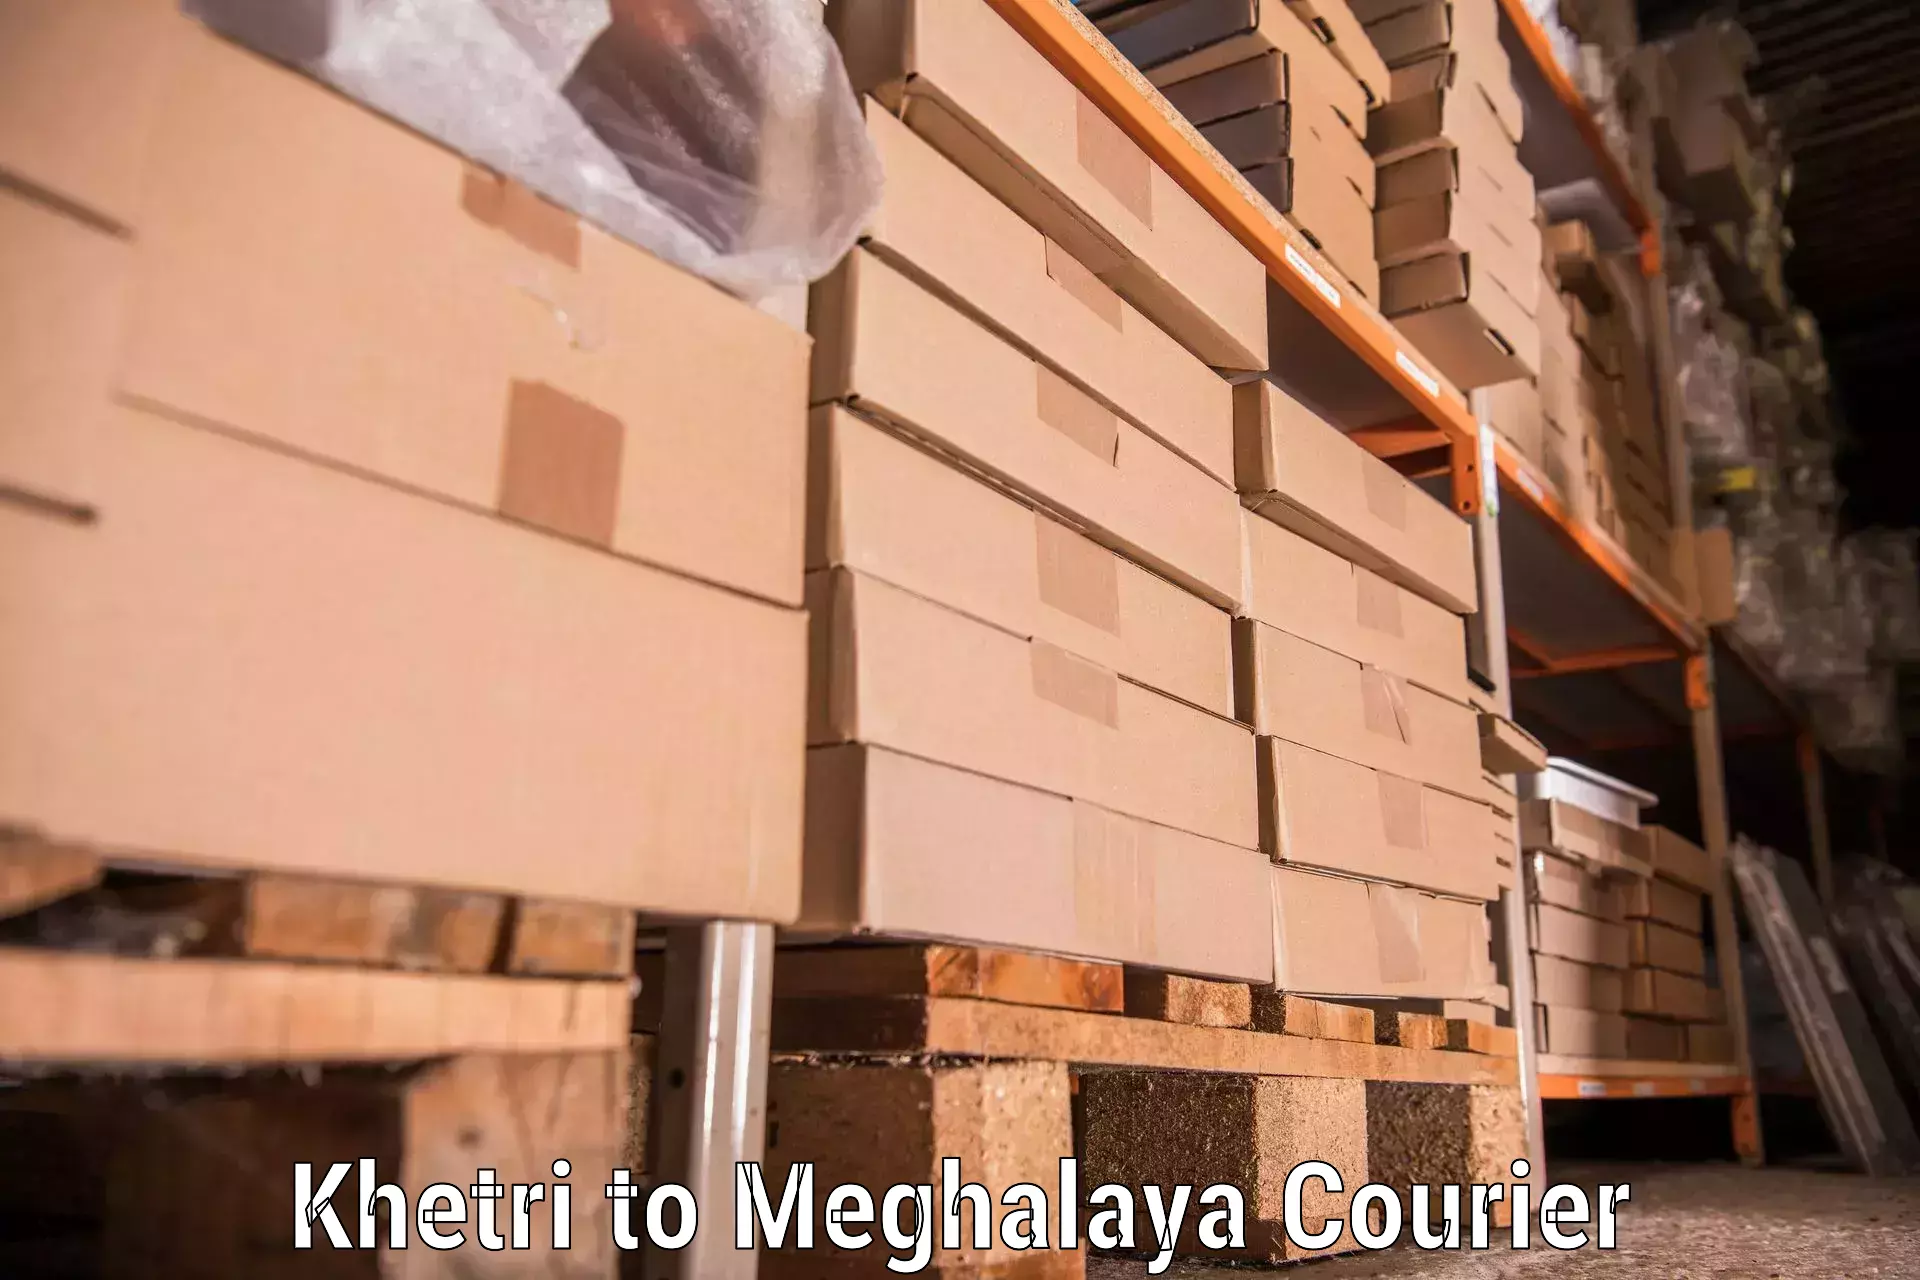 Seamless moving process Khetri to Meghalaya